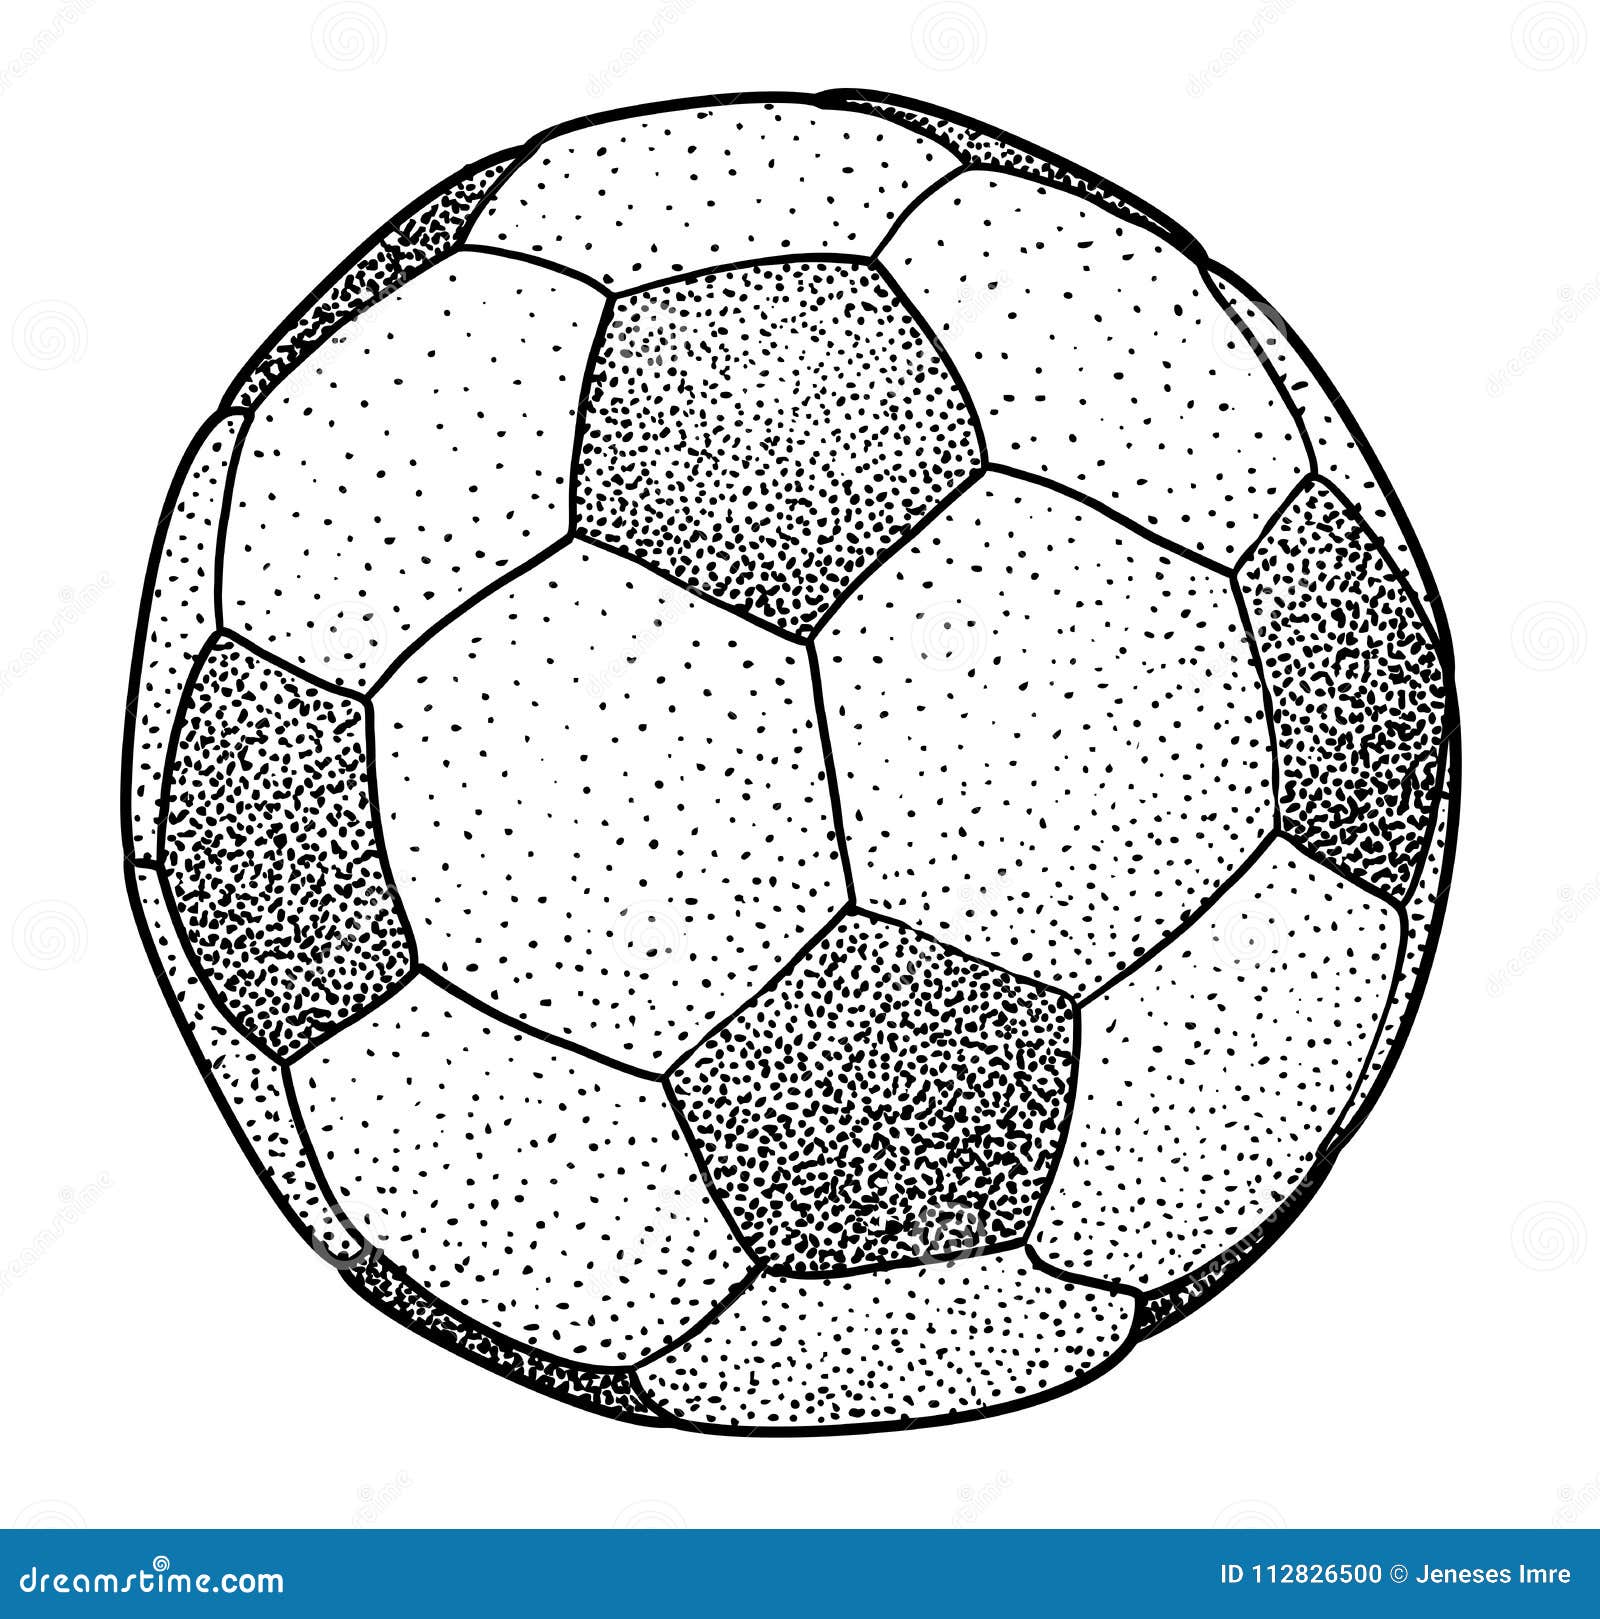 Чертеж футбольного мяча